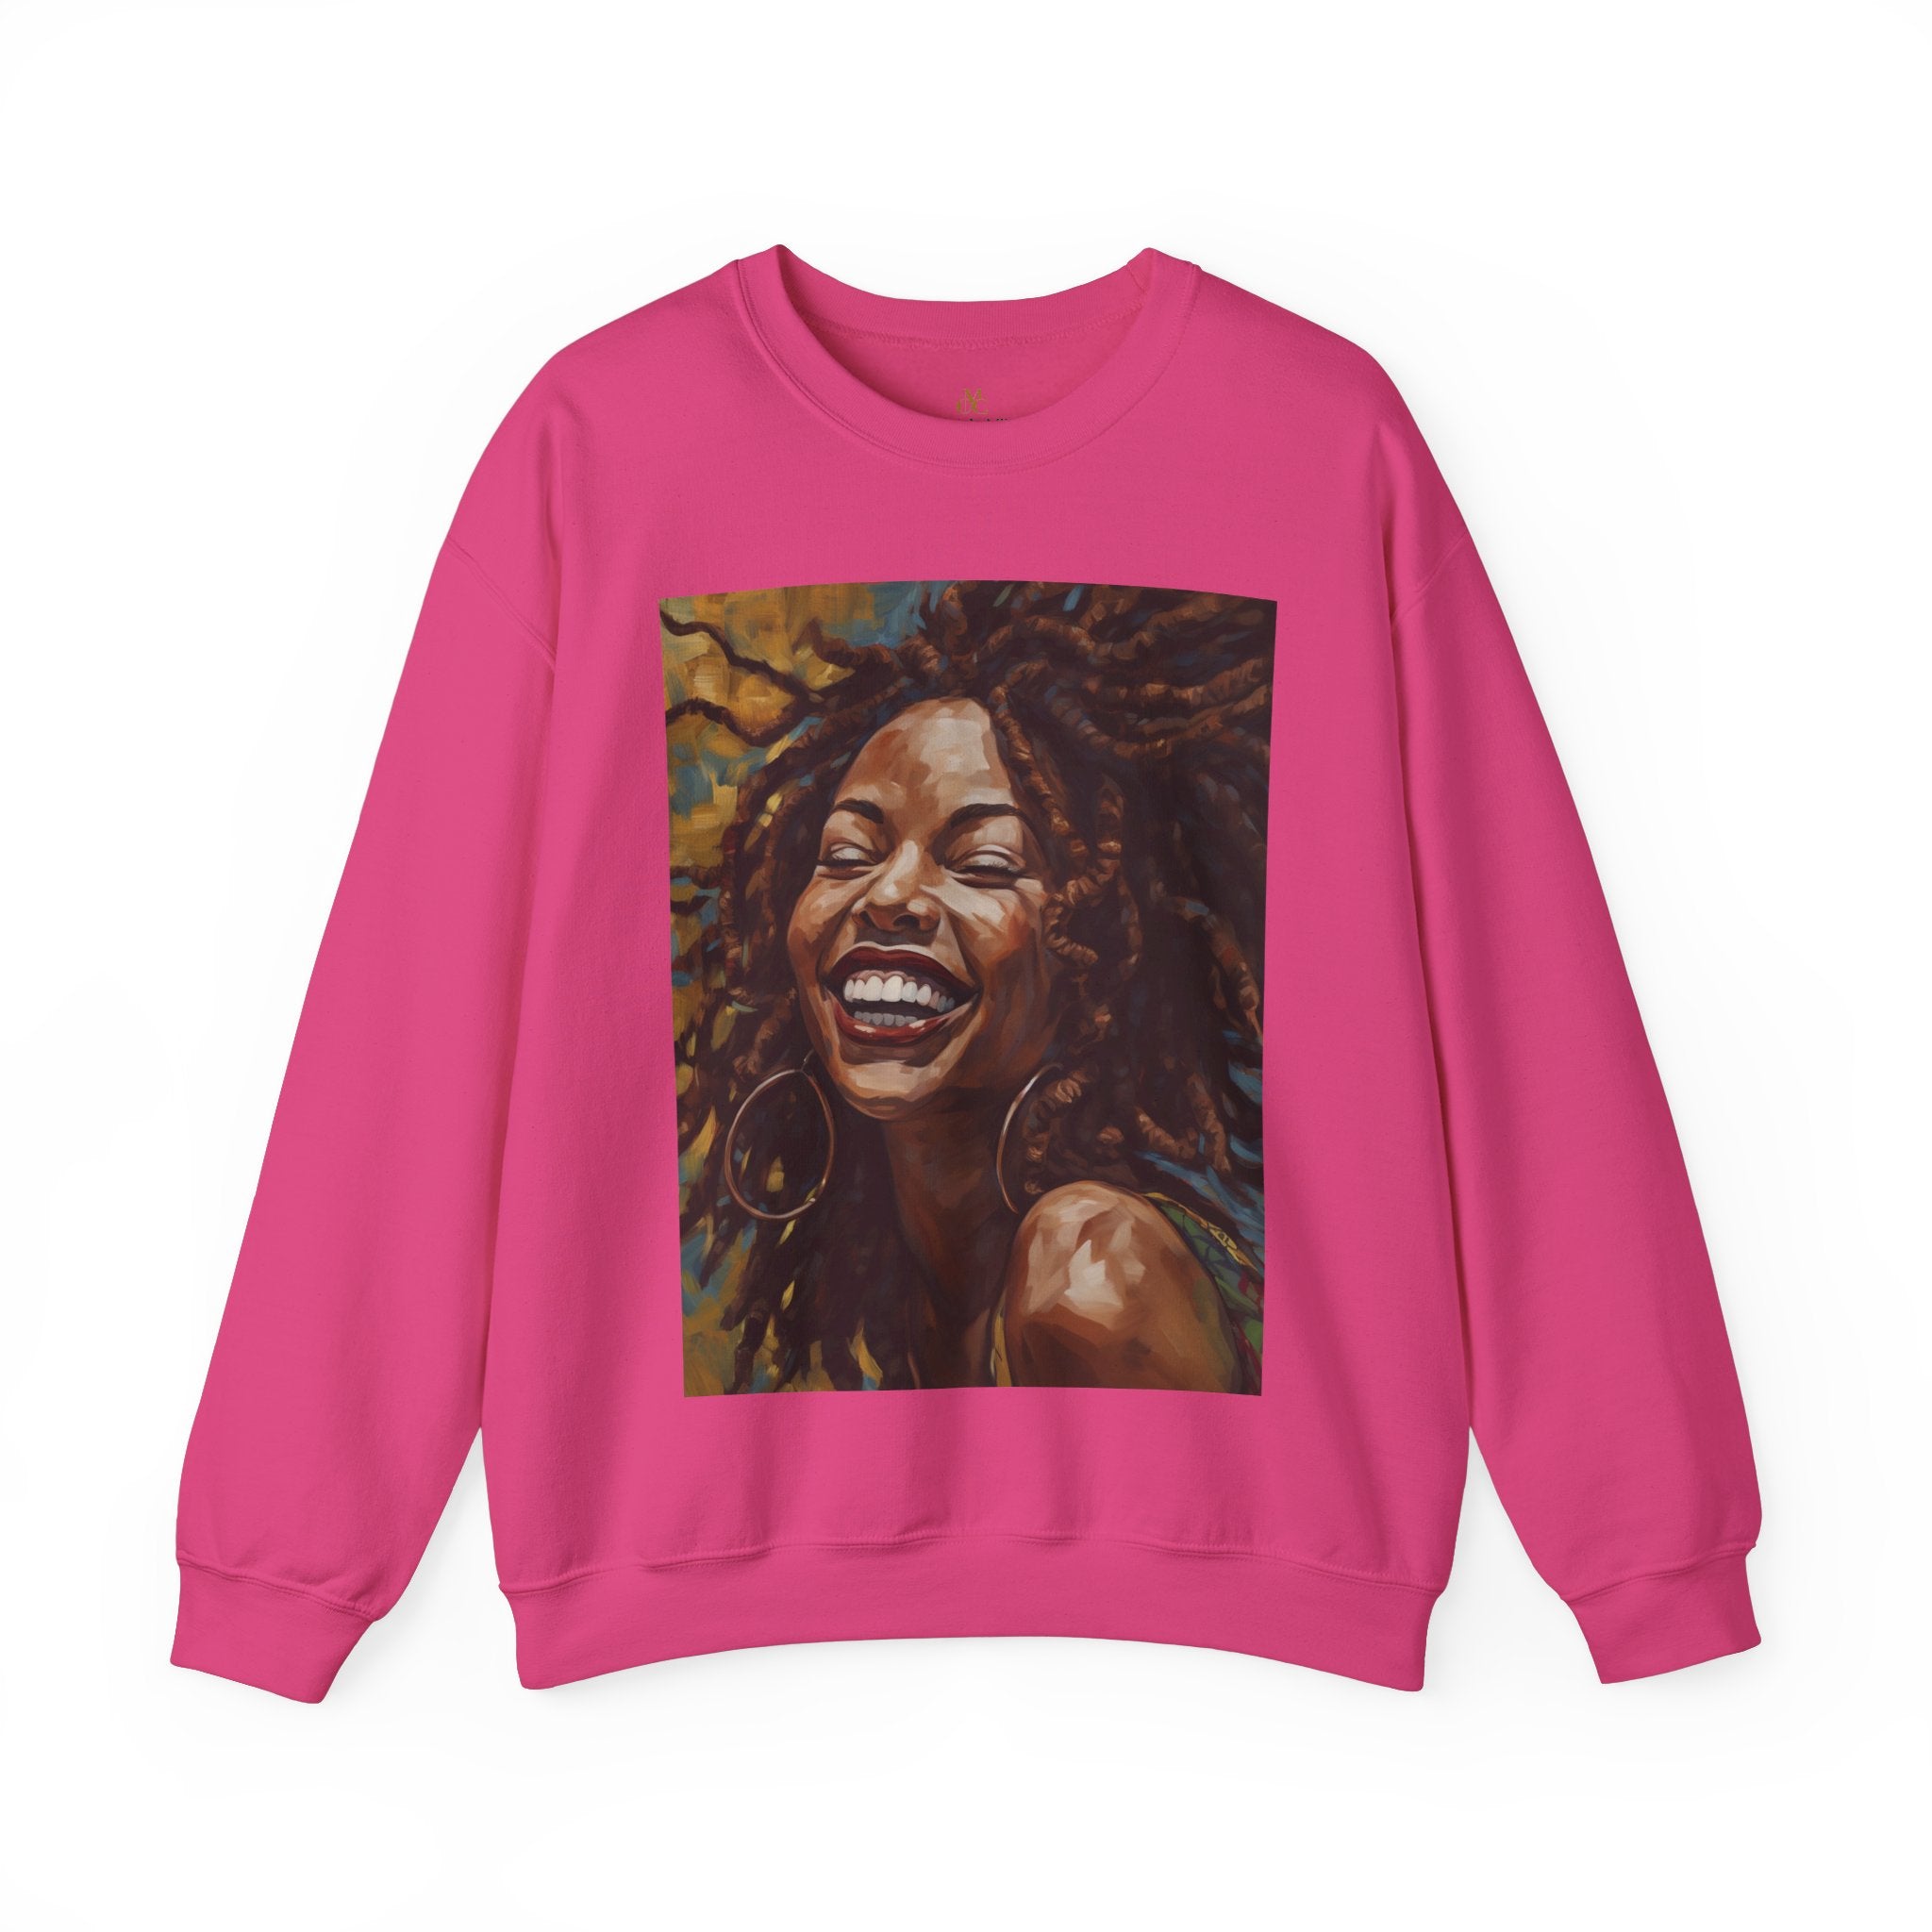 Afro Locs Girl sweatshirt in pink.